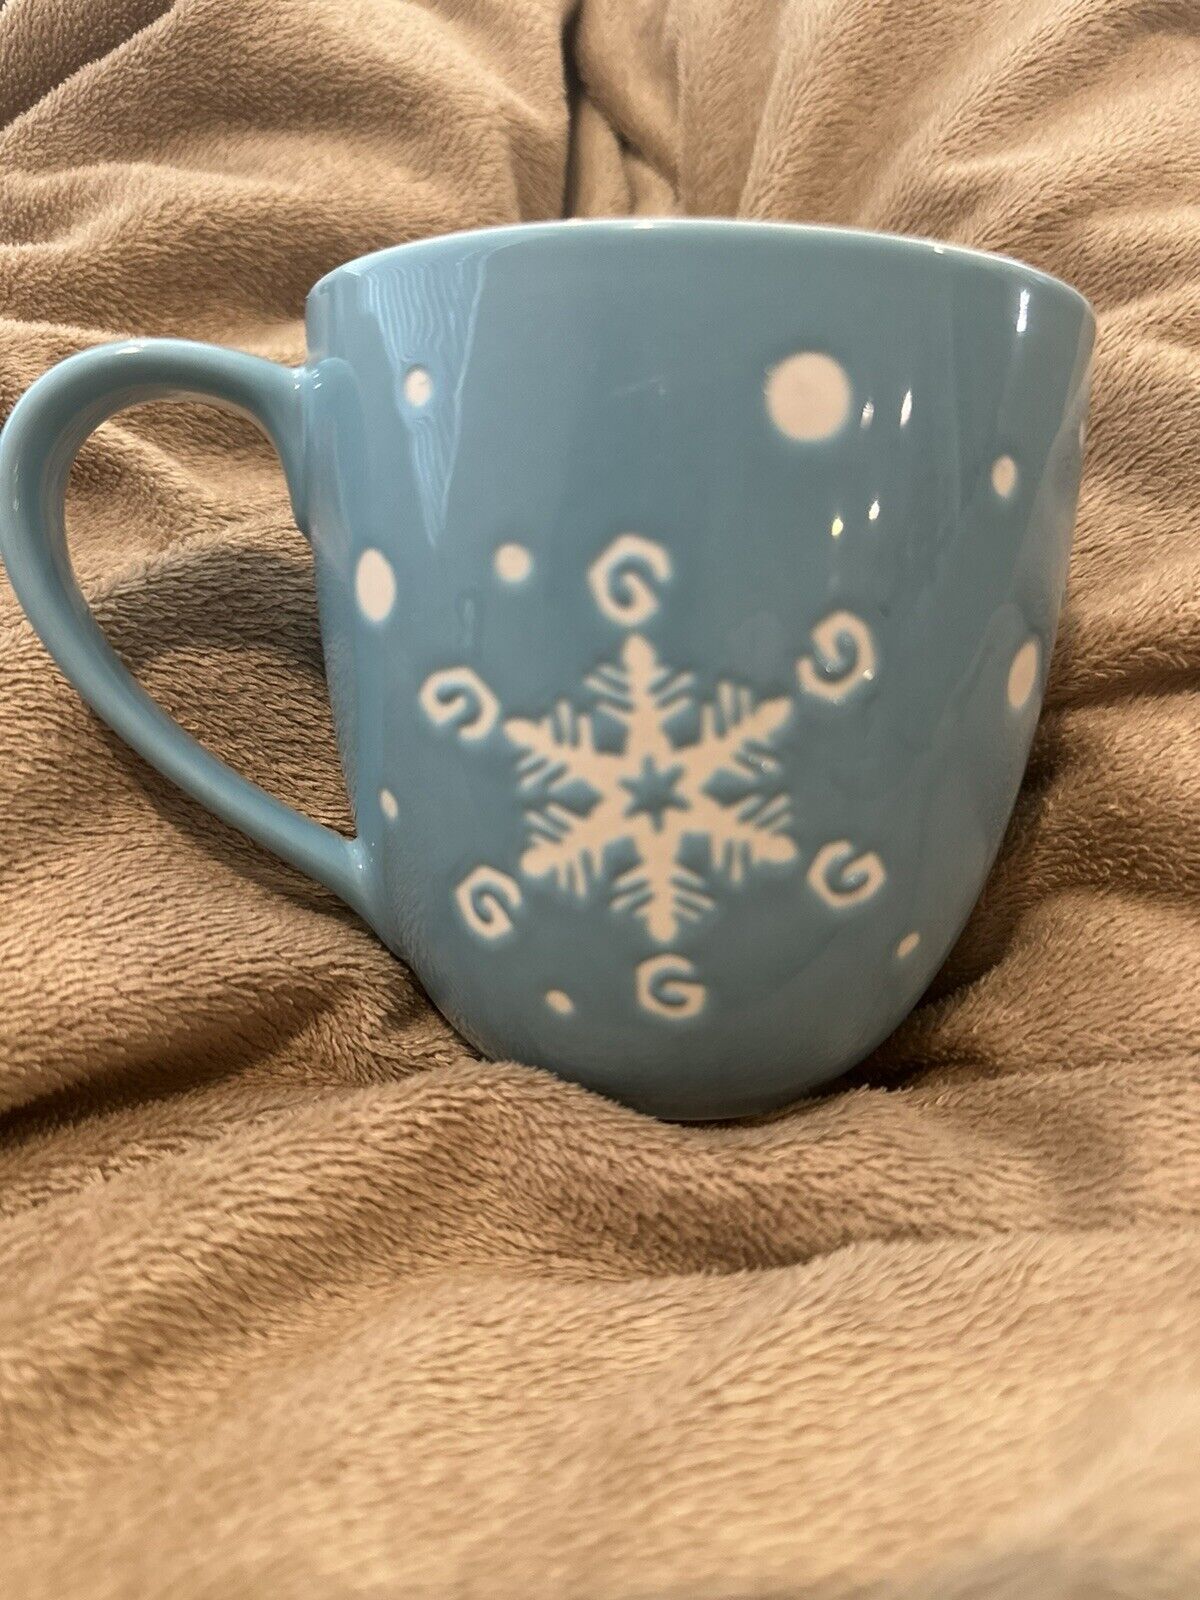 2007 Starbucks Holiday Snowflake Christmas Teal Blue Ceramic Coffee Mug 16 fl oz